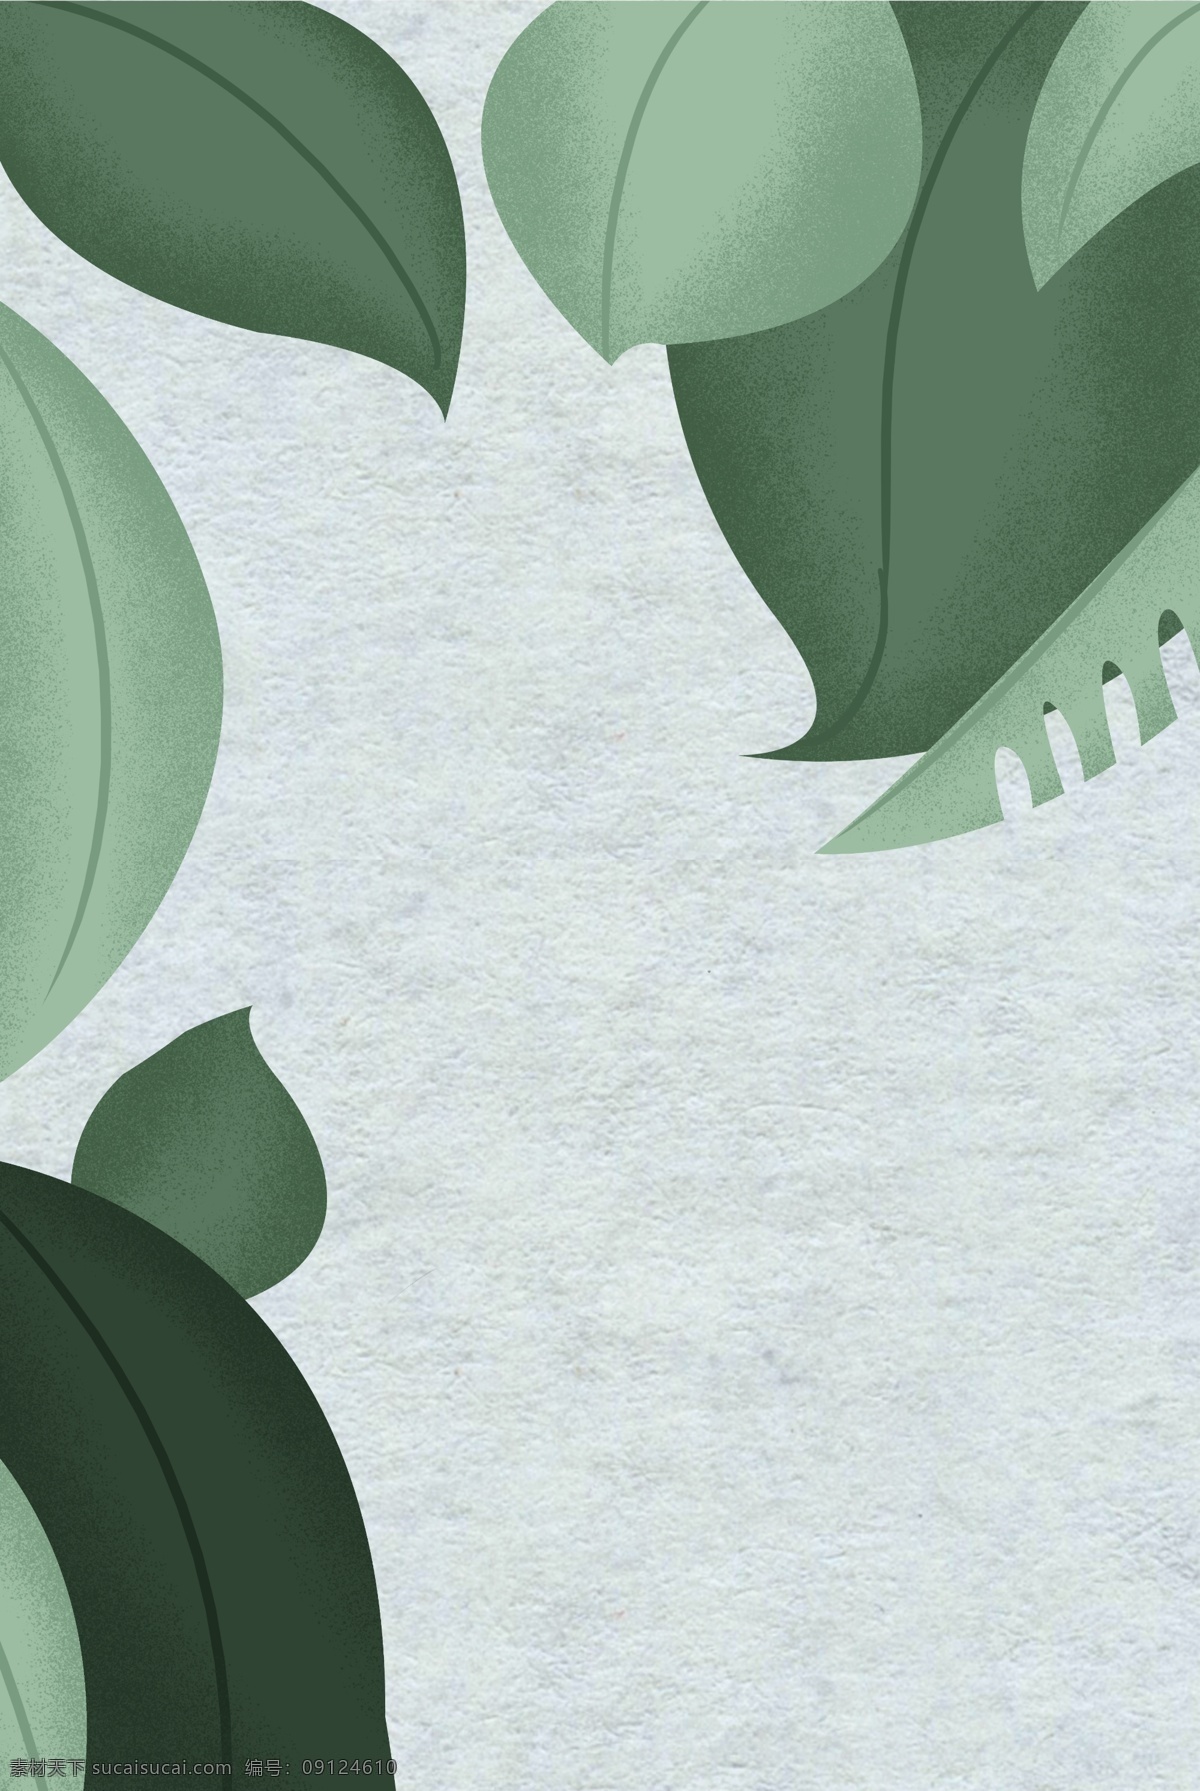 灰绿色 纹理 绿叶 背景 质感 扁平背景 插画背景 叶子 植物 春季 清新